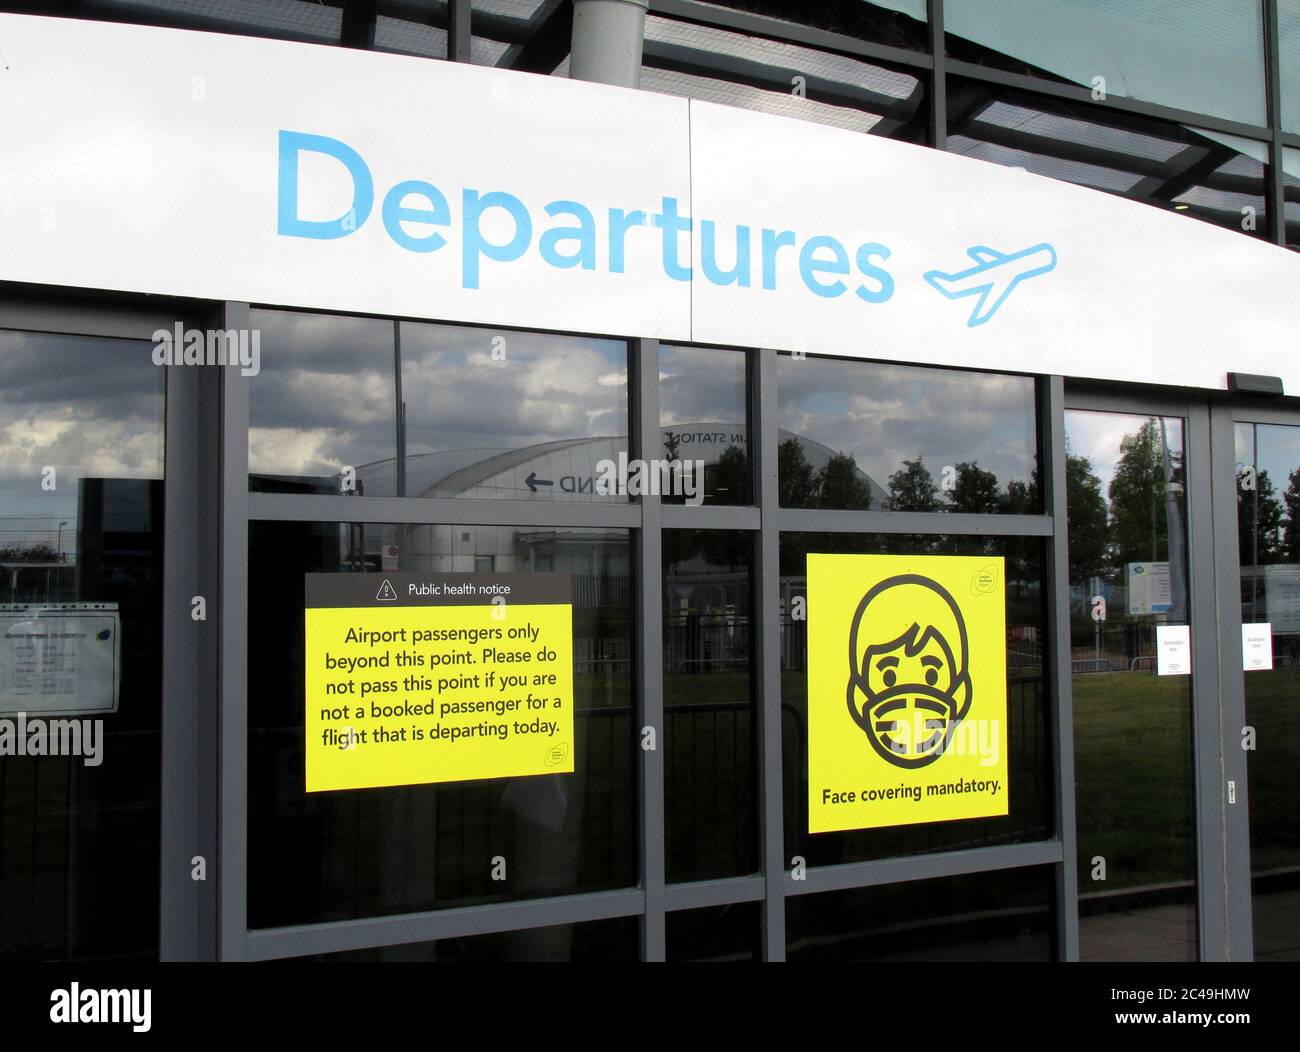 L'aeroporto di Londra Southend ha reso il proprio terminal covid-19 sicuro da coperture obbligatorie per il viso e solo i passeggeri con voli consentiti all'interno di giugno 2020 Foto Stock